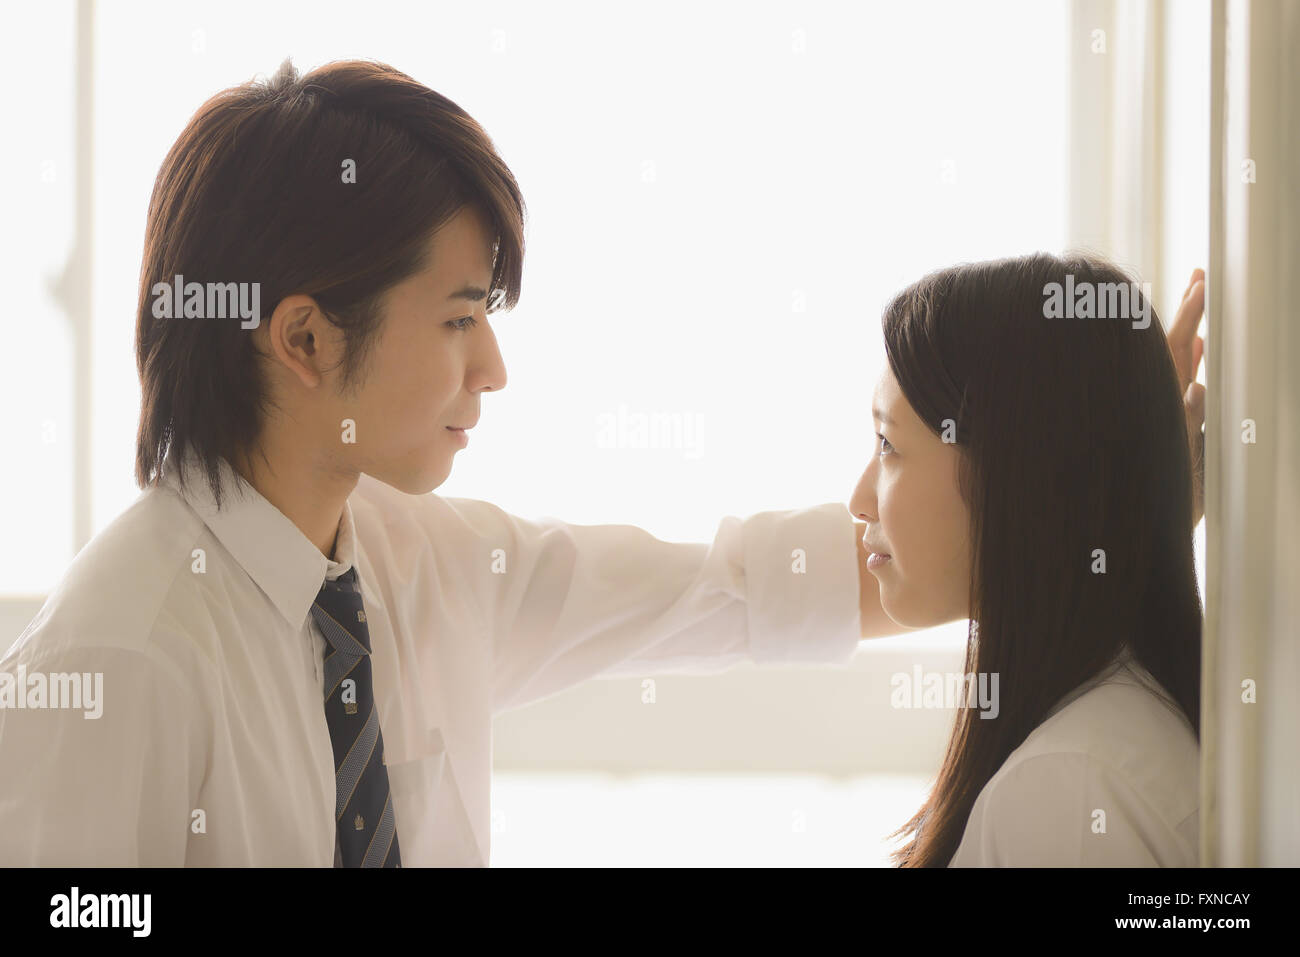 Les lycéens japonais dans un moment romantique dans le couloir d'école Banque D'Images